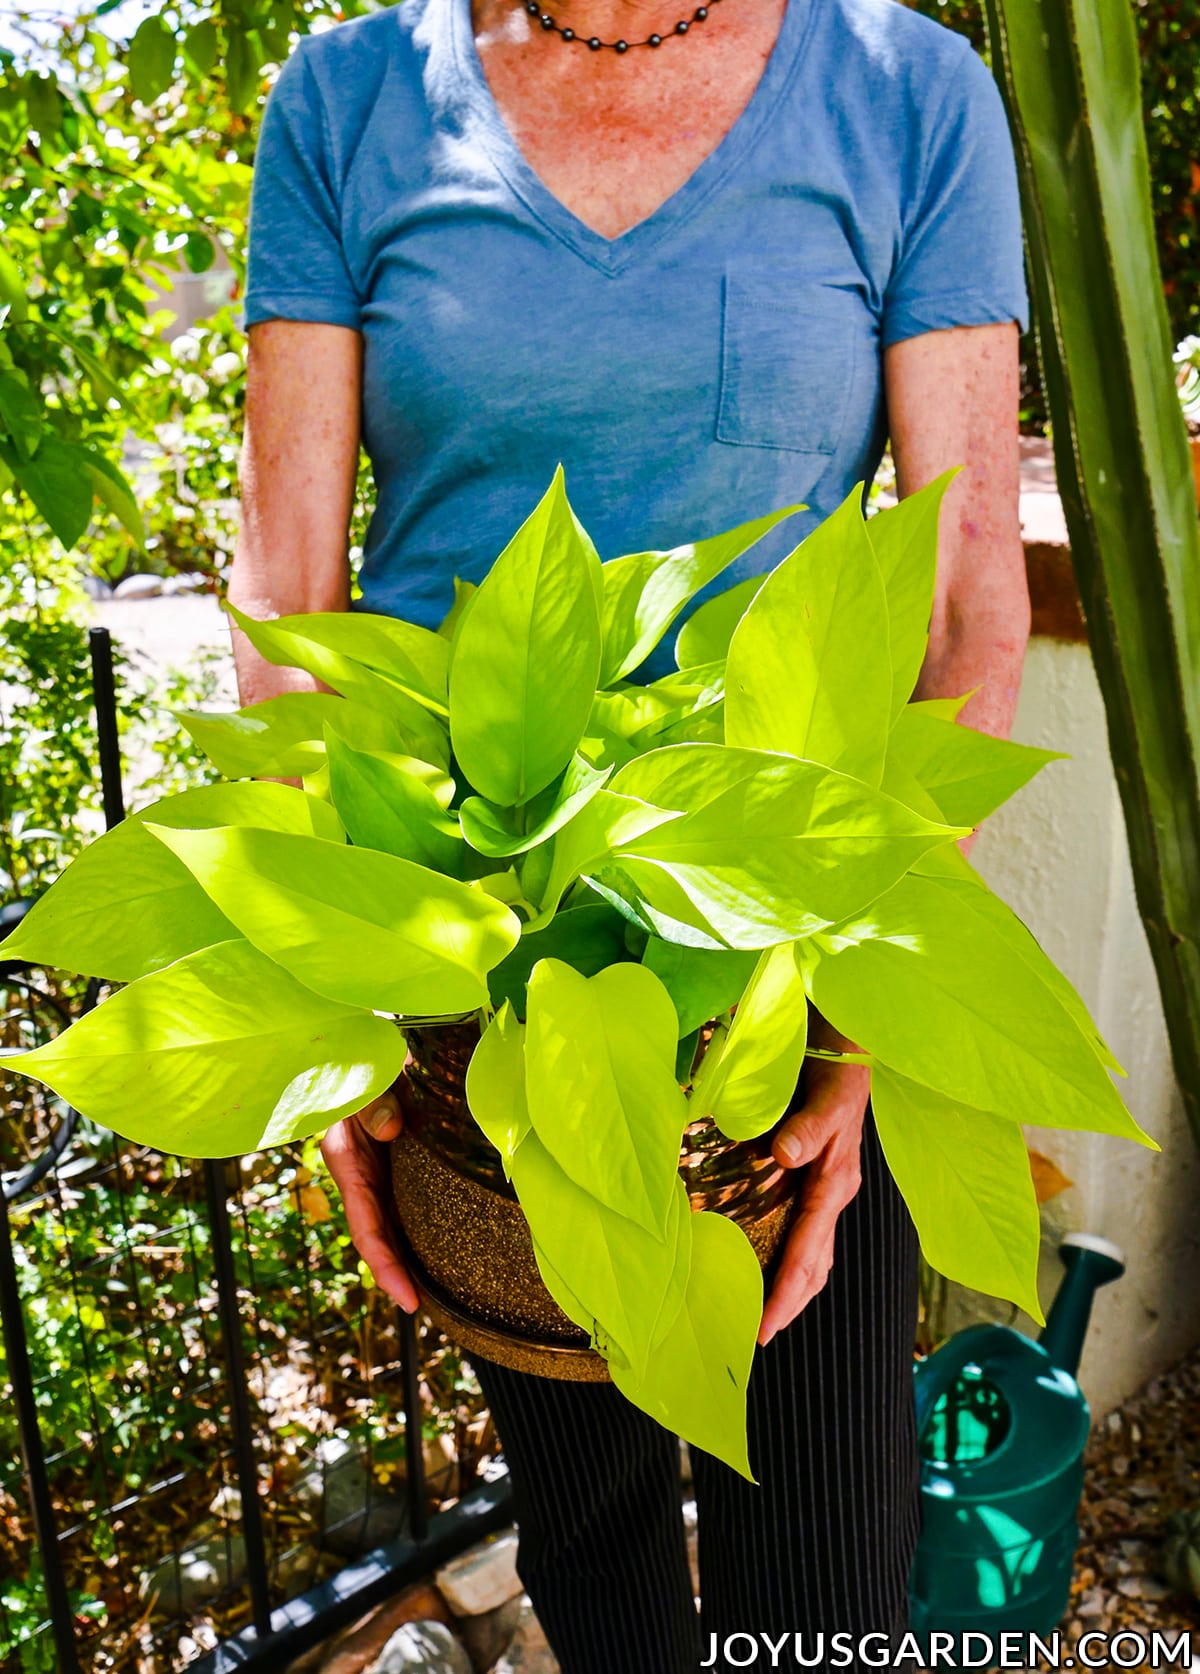  Chăm sóc cây Neon Pothos: Cây trồng trong nhà Chartreuse sống động